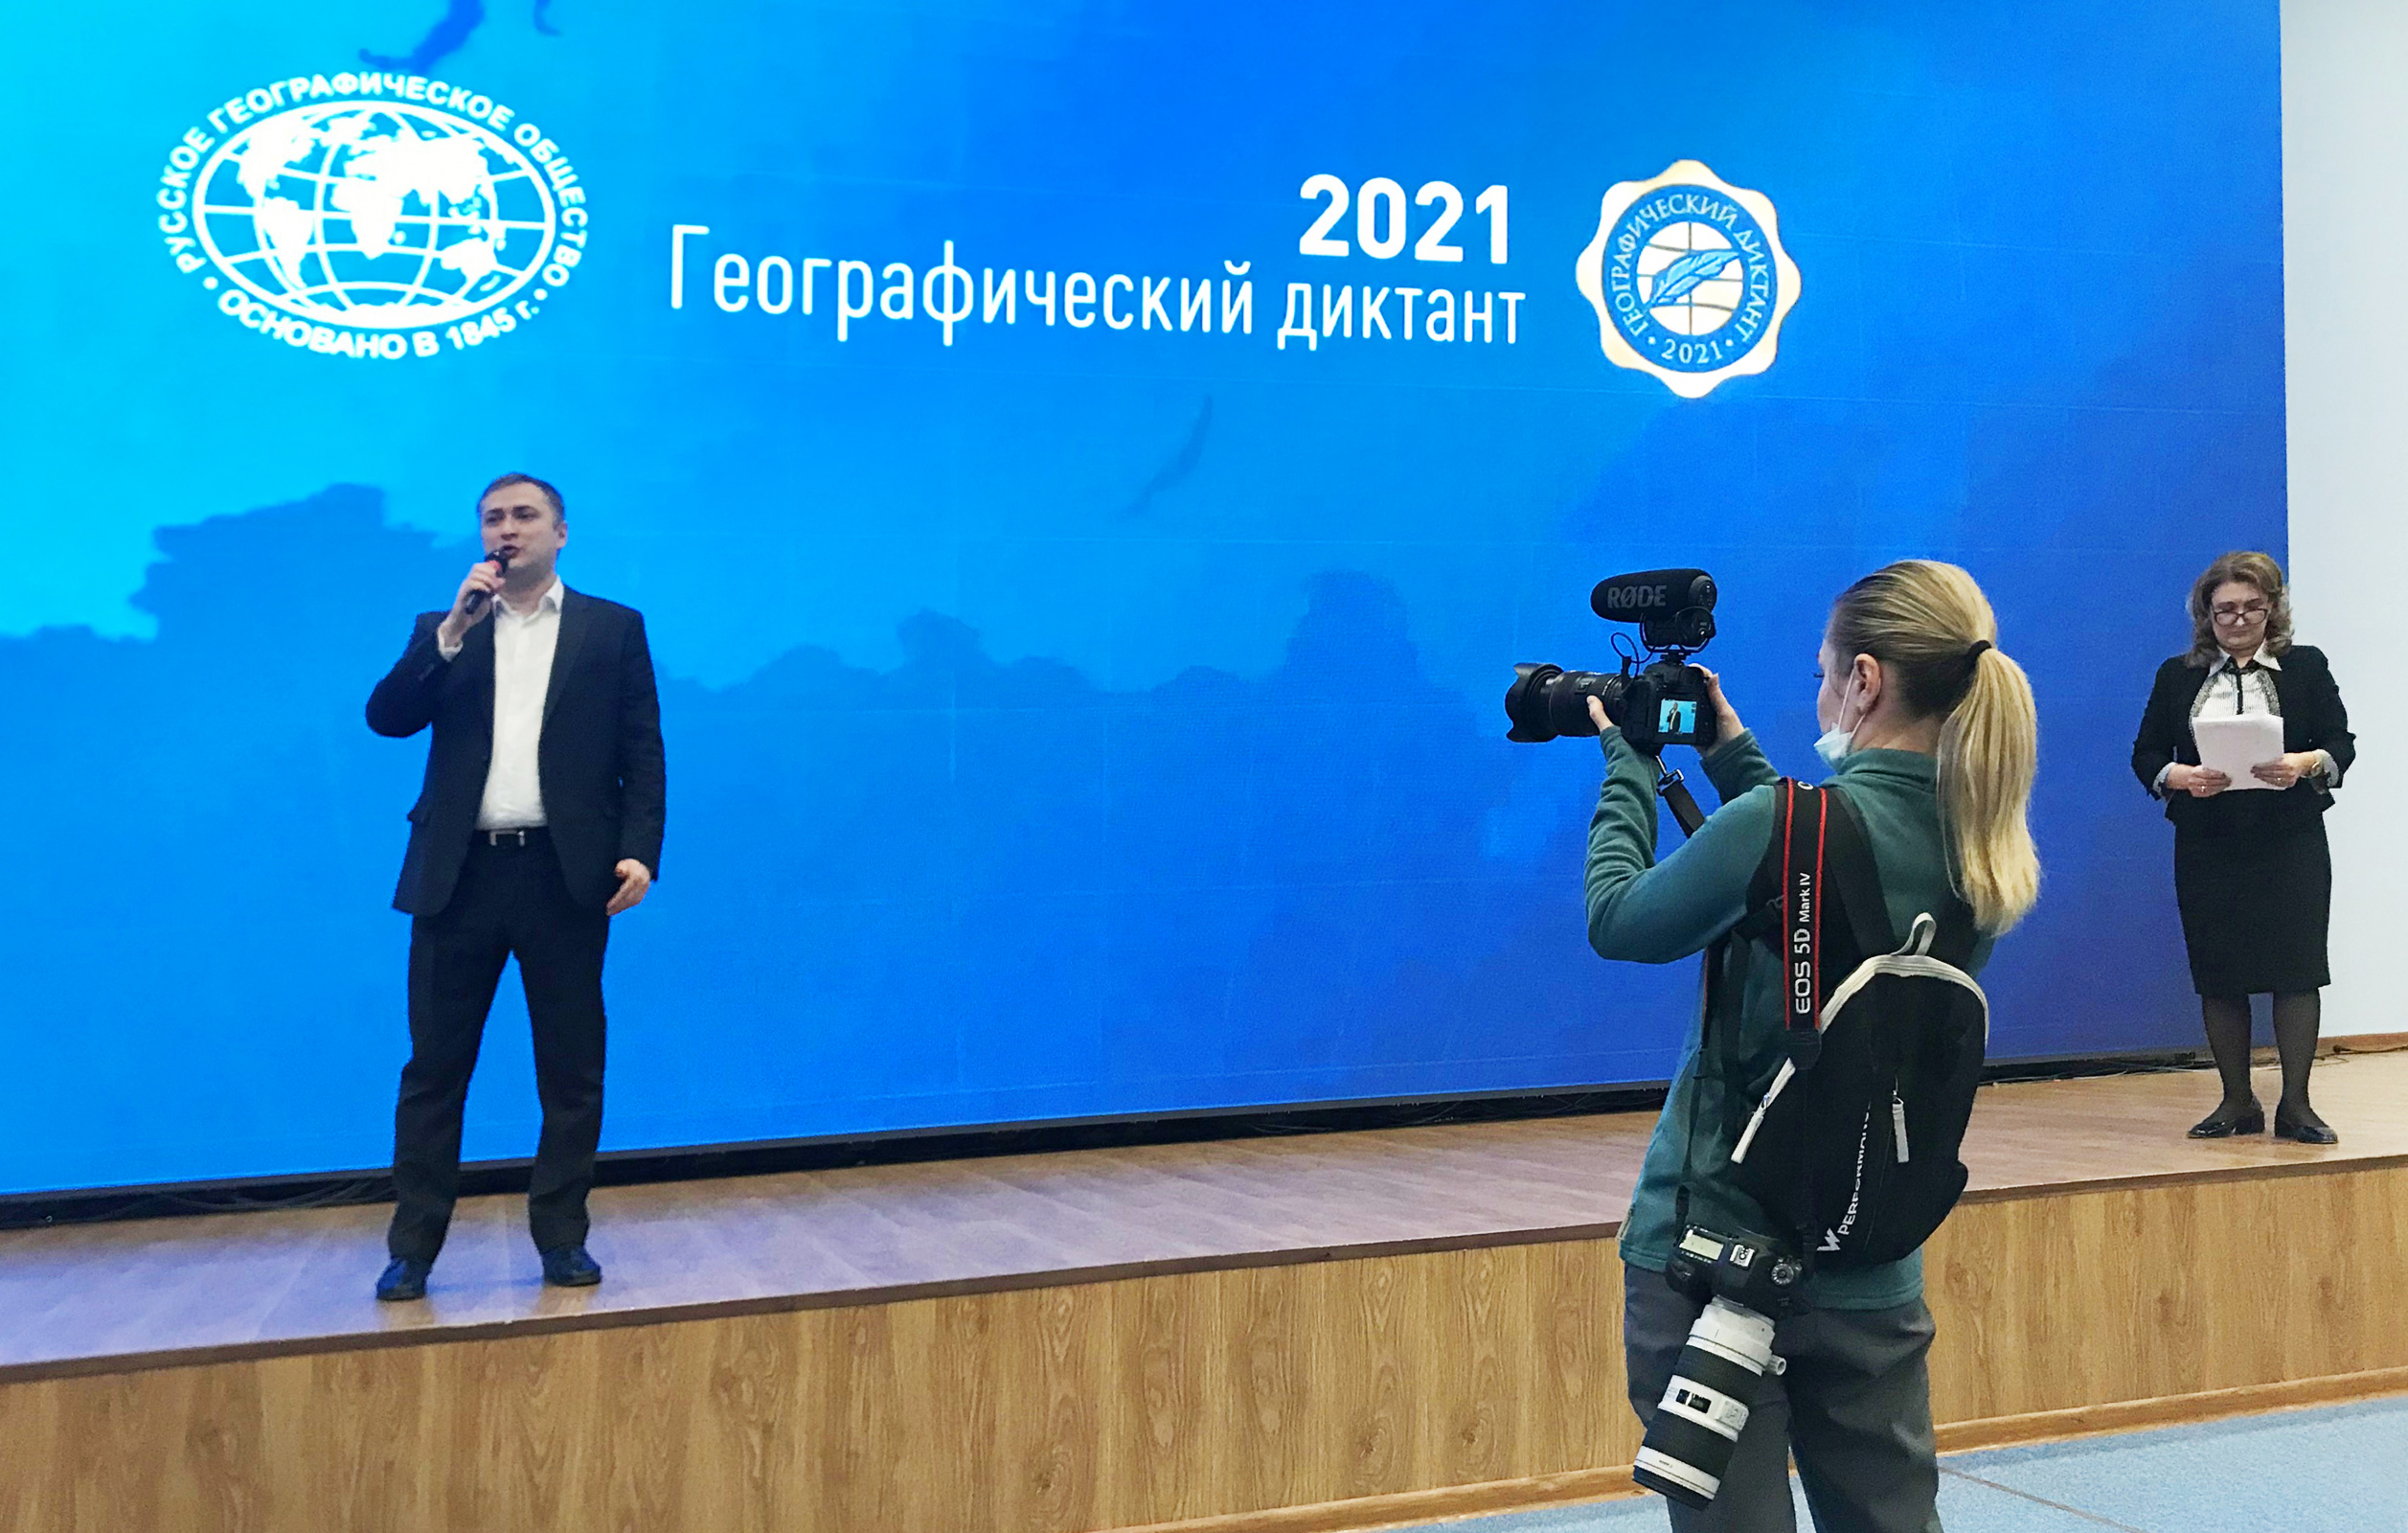 Выступление вице-премьера Дагестана Мурада Казиева. Фото предоставлено Дагестанским отделением РГО.